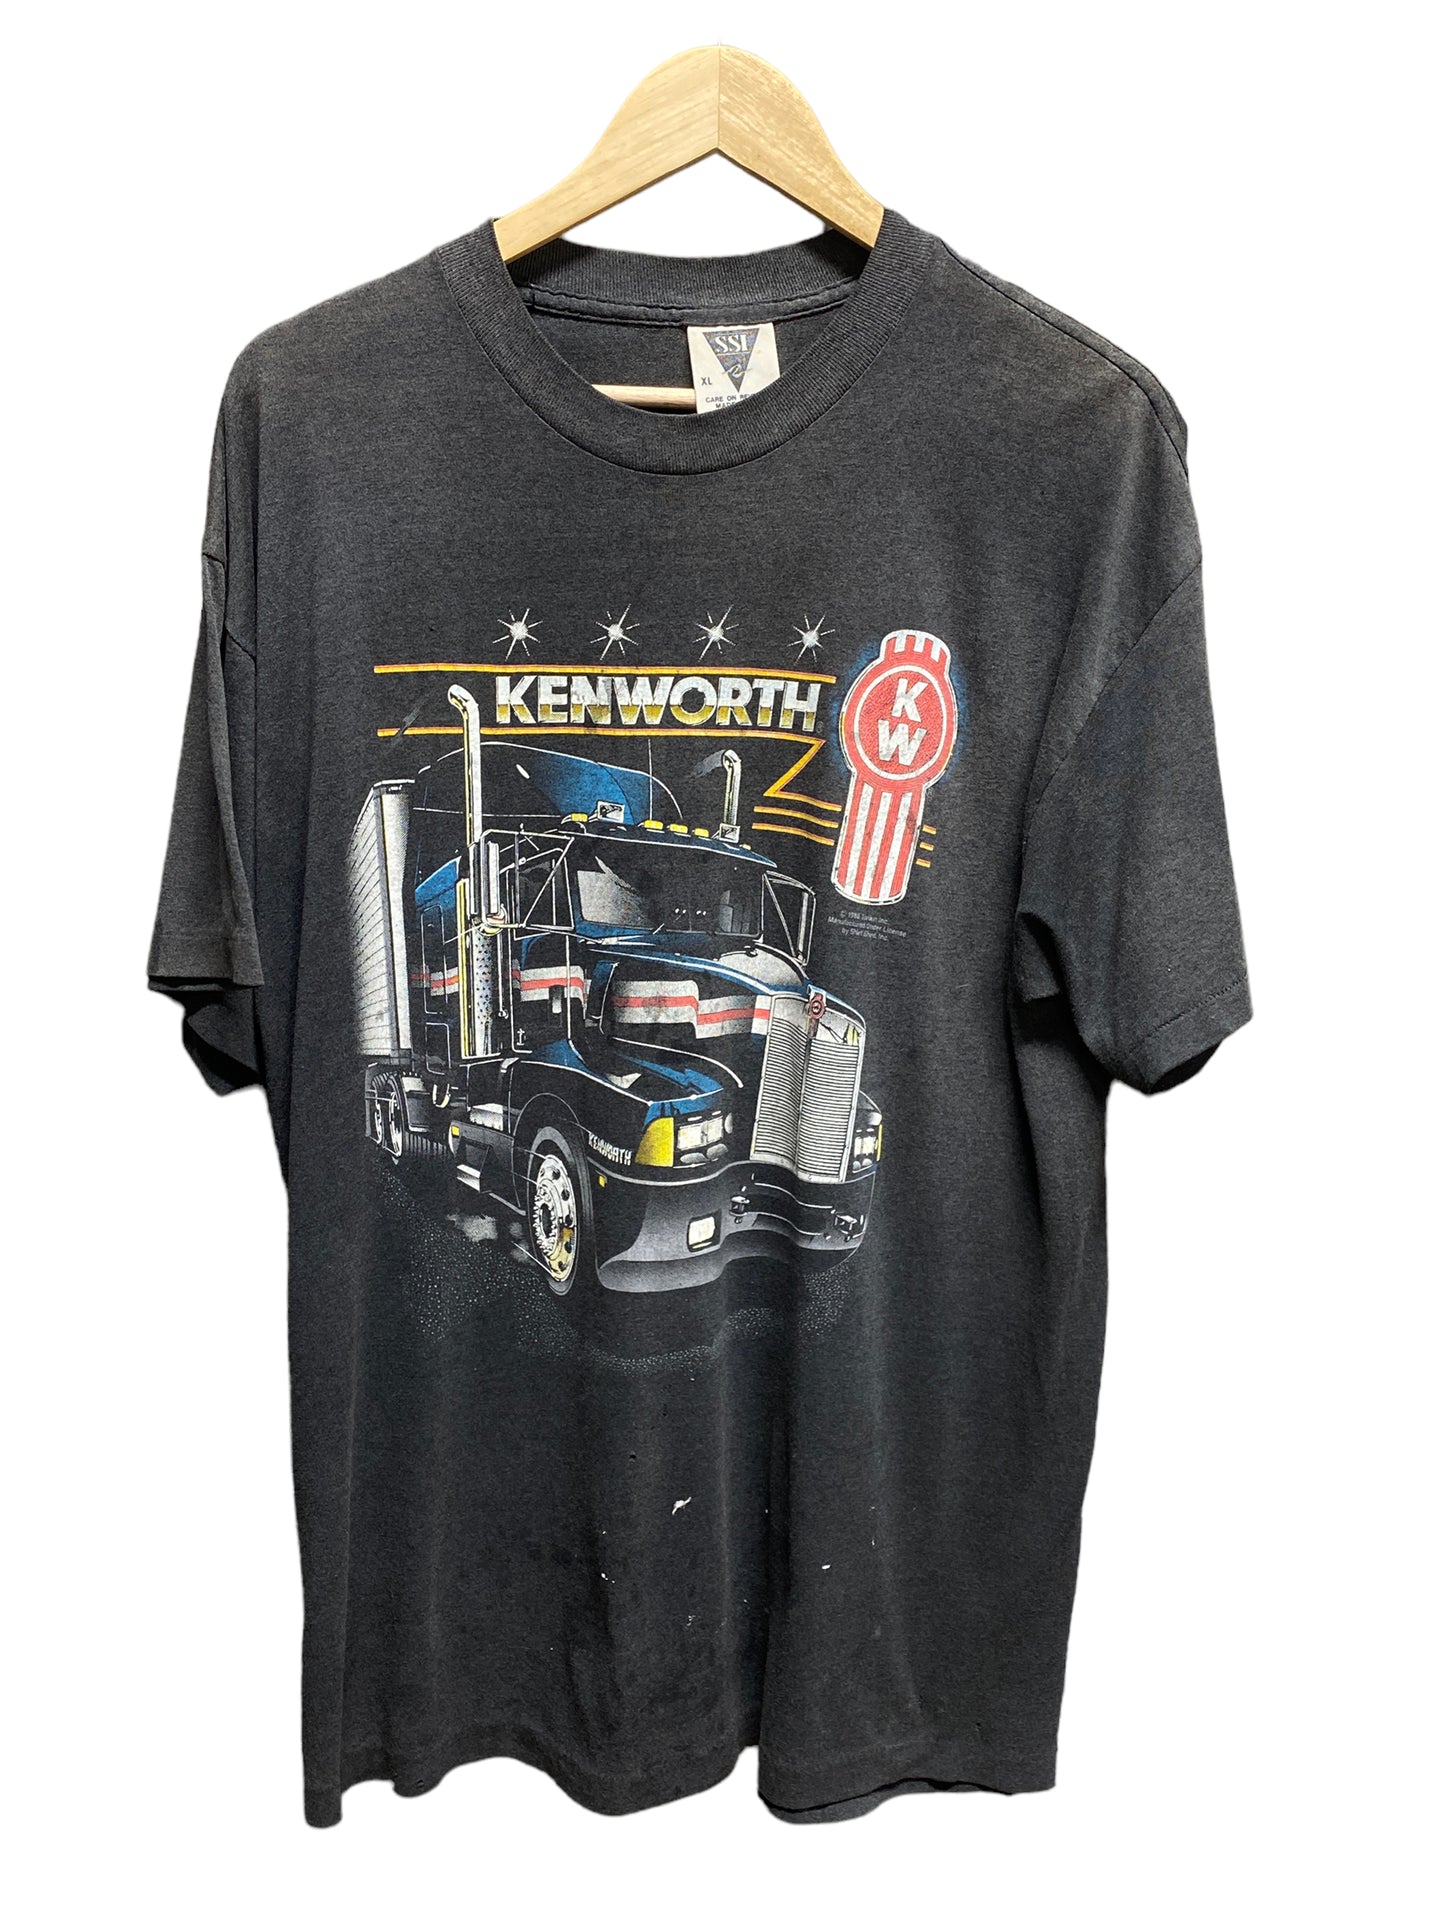 Vintage 1988 SSI Kenworth Trucking 3D Graphic Tee Size Medium